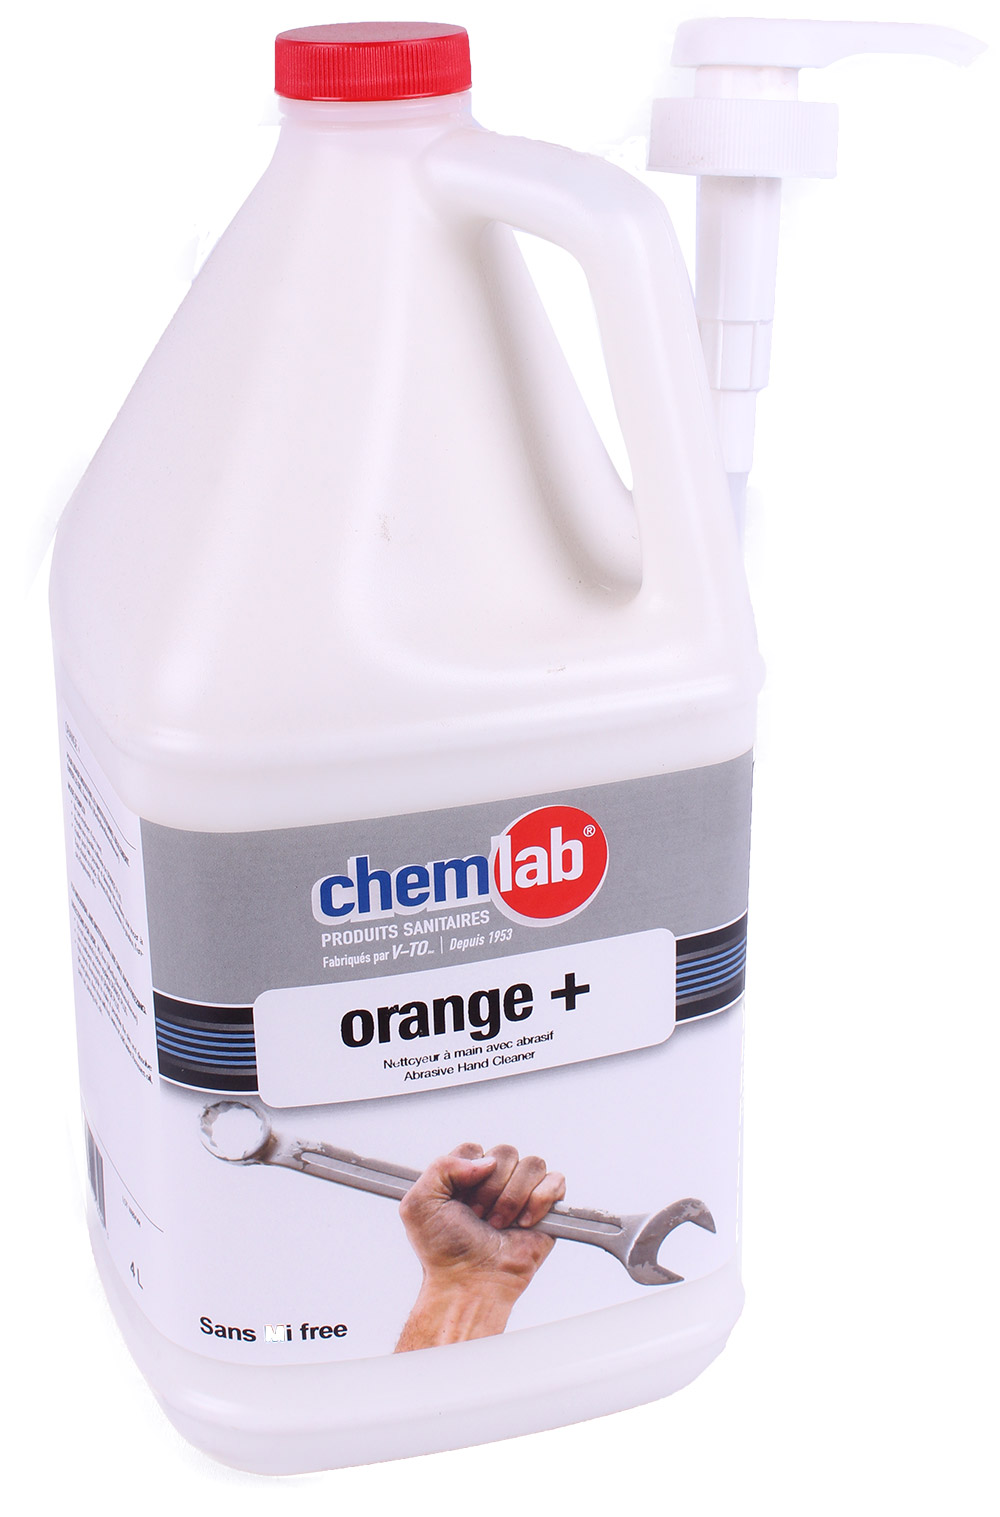 Orange-plus – pompe psl1/8 + nettoyant à mains avec abrasif mixte